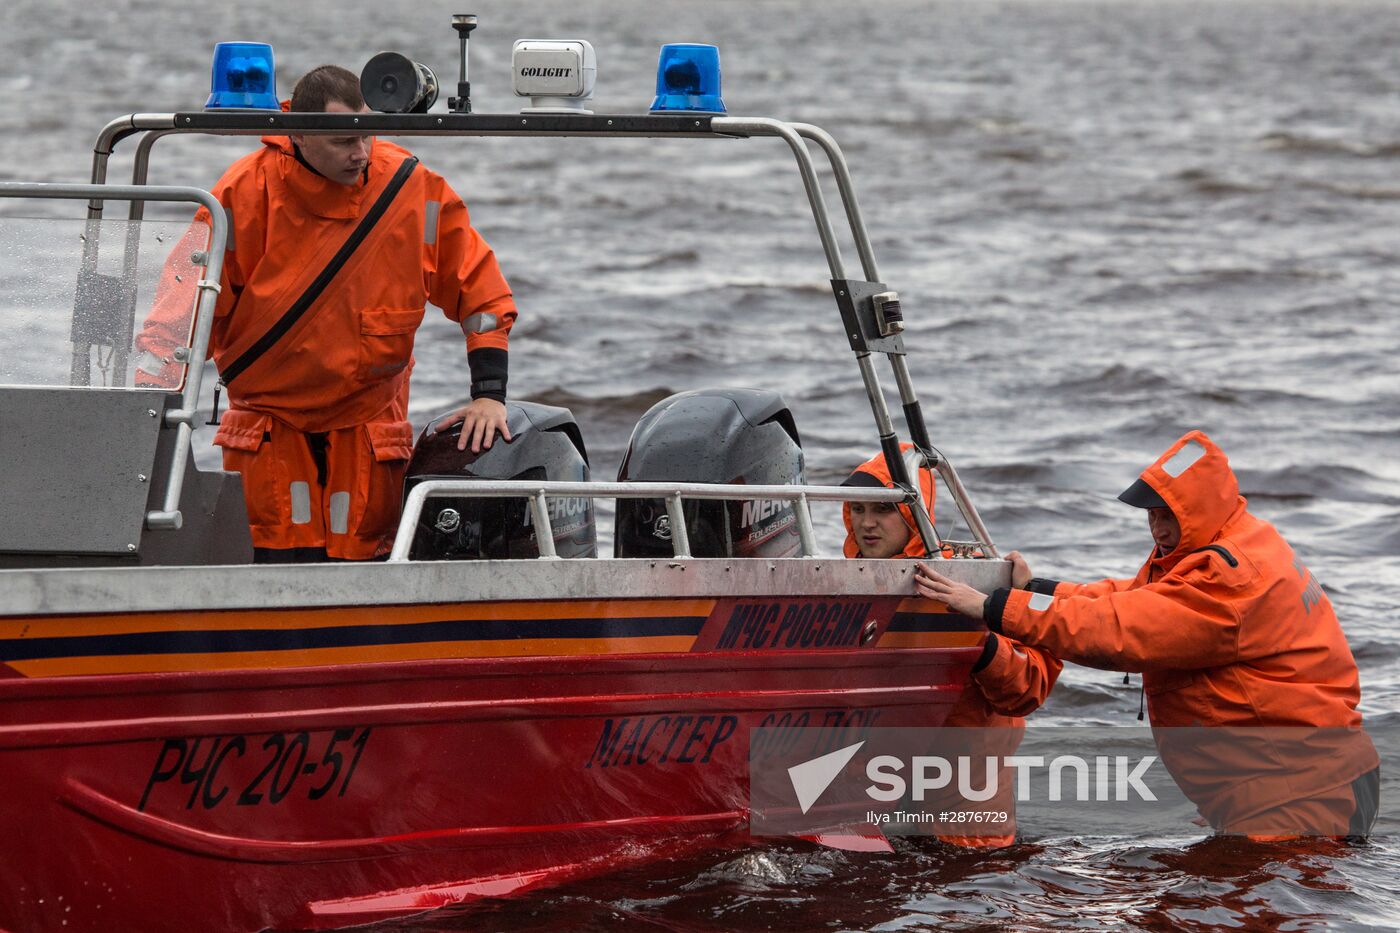 Children die in Karelia during boating trip